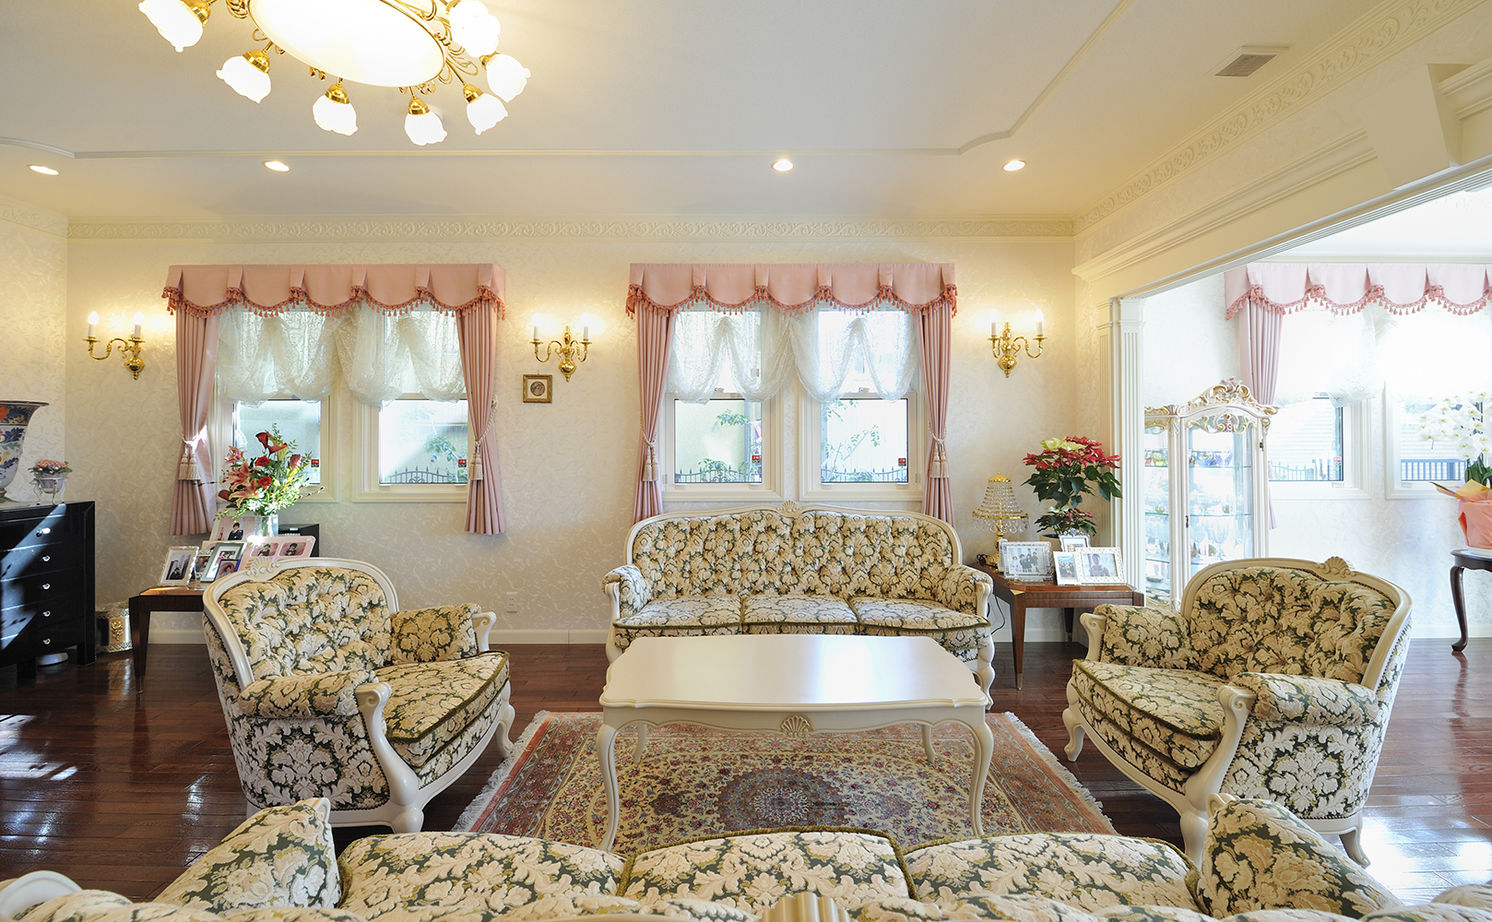 Suumo ロココ調の家具が映える優美な邸宅 年中快適な室内に上質の時が流れる 三井ホーム の建築実例詳細 注文住宅